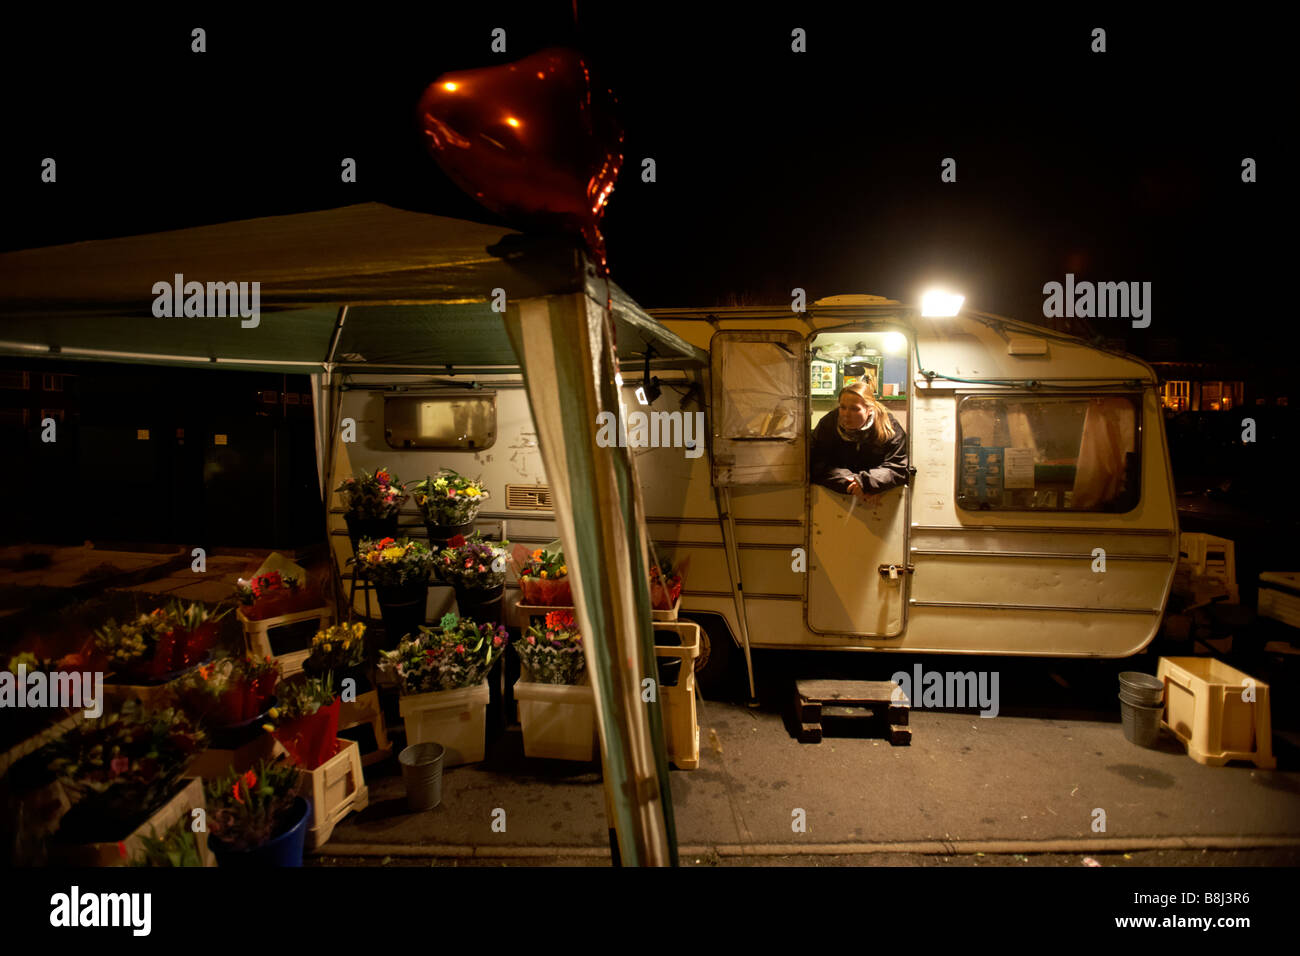 Ein Wohnwagen geparkt am Straßenrand in Bromsgrove, Worcestershire, UK, Verkauf von Blumen zum Valentinstag. Stockfoto